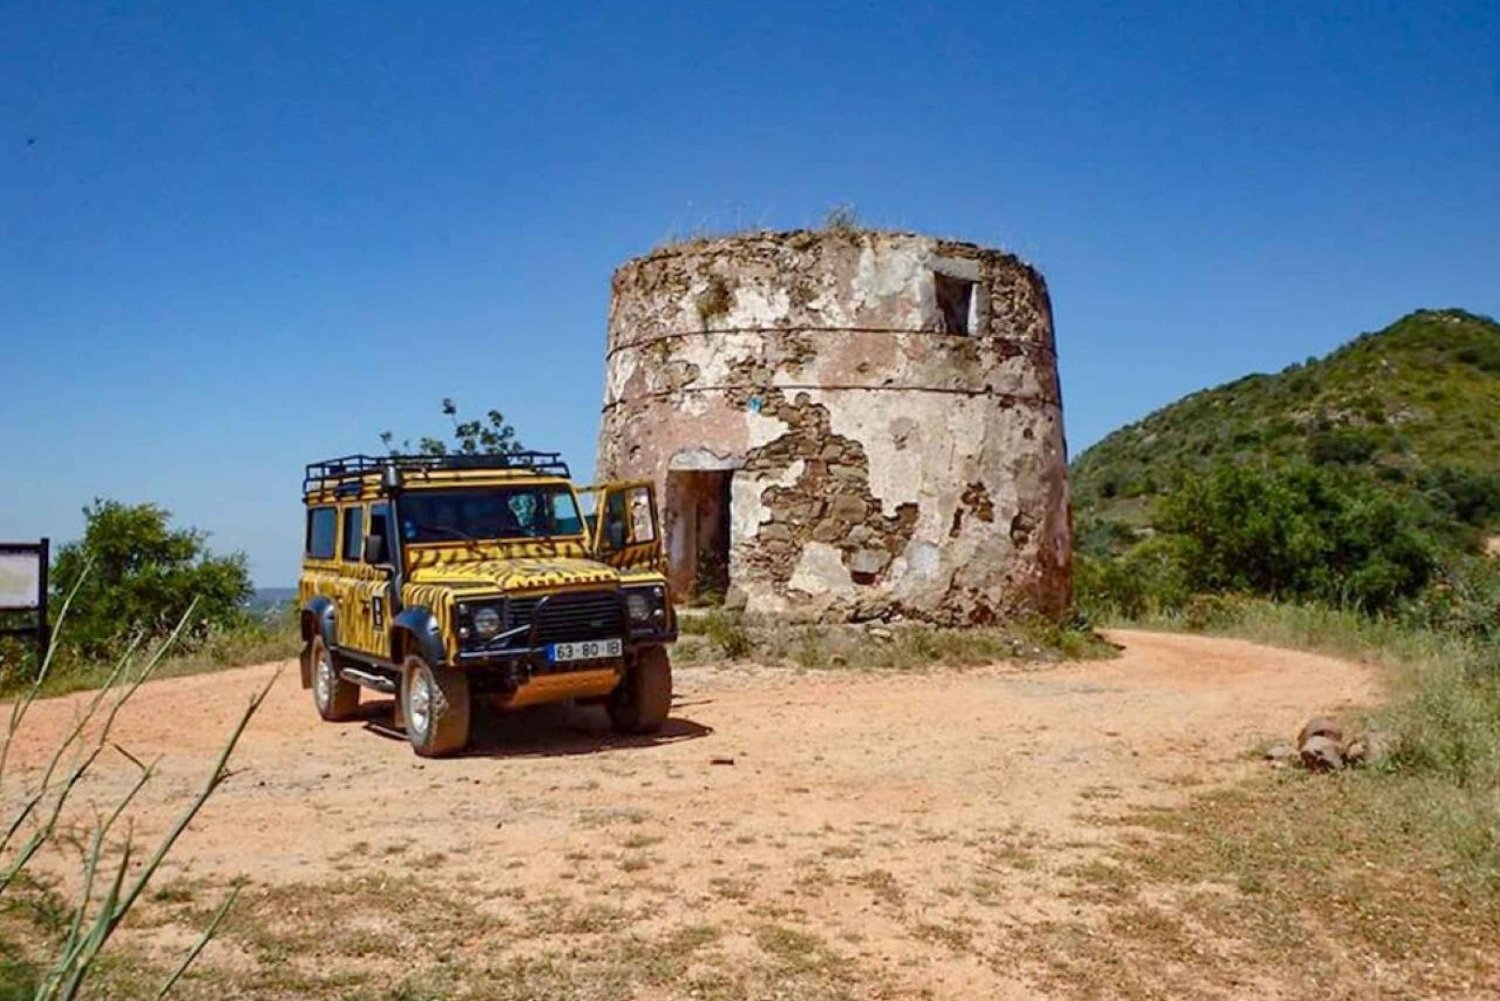 Algarve: Algargi: Jeep Safari Tour with Liquor and Honey Tasting (Jeeppisafarikierros ja viinan ja hunajan maistelua)